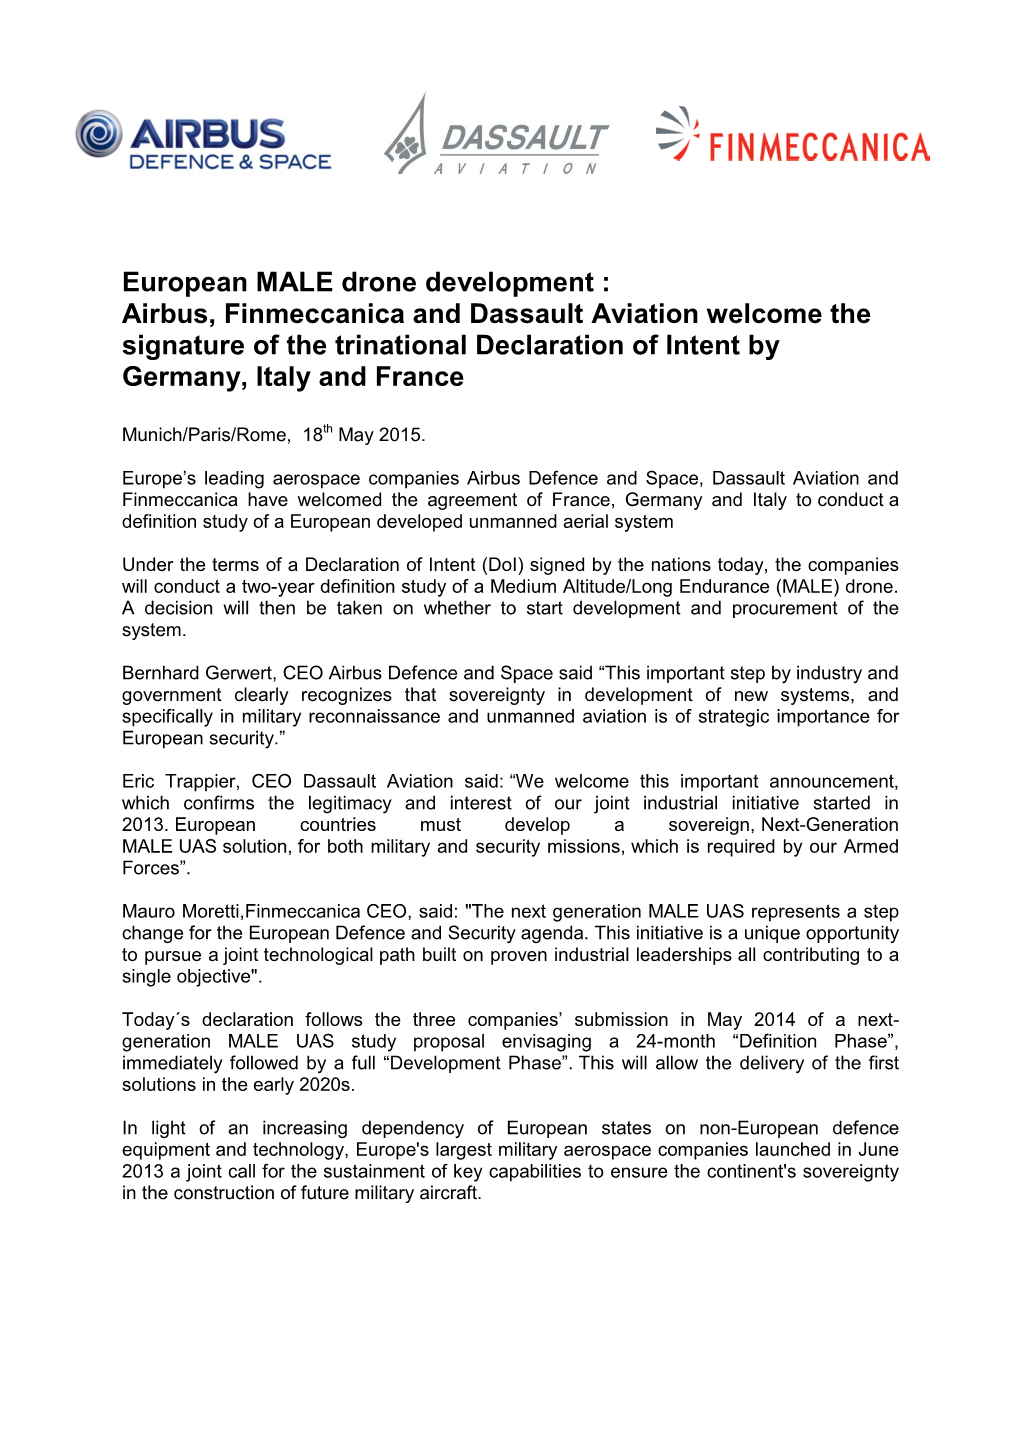 European MALE Drone Development : Airbus, Finmeccanica and Dassault